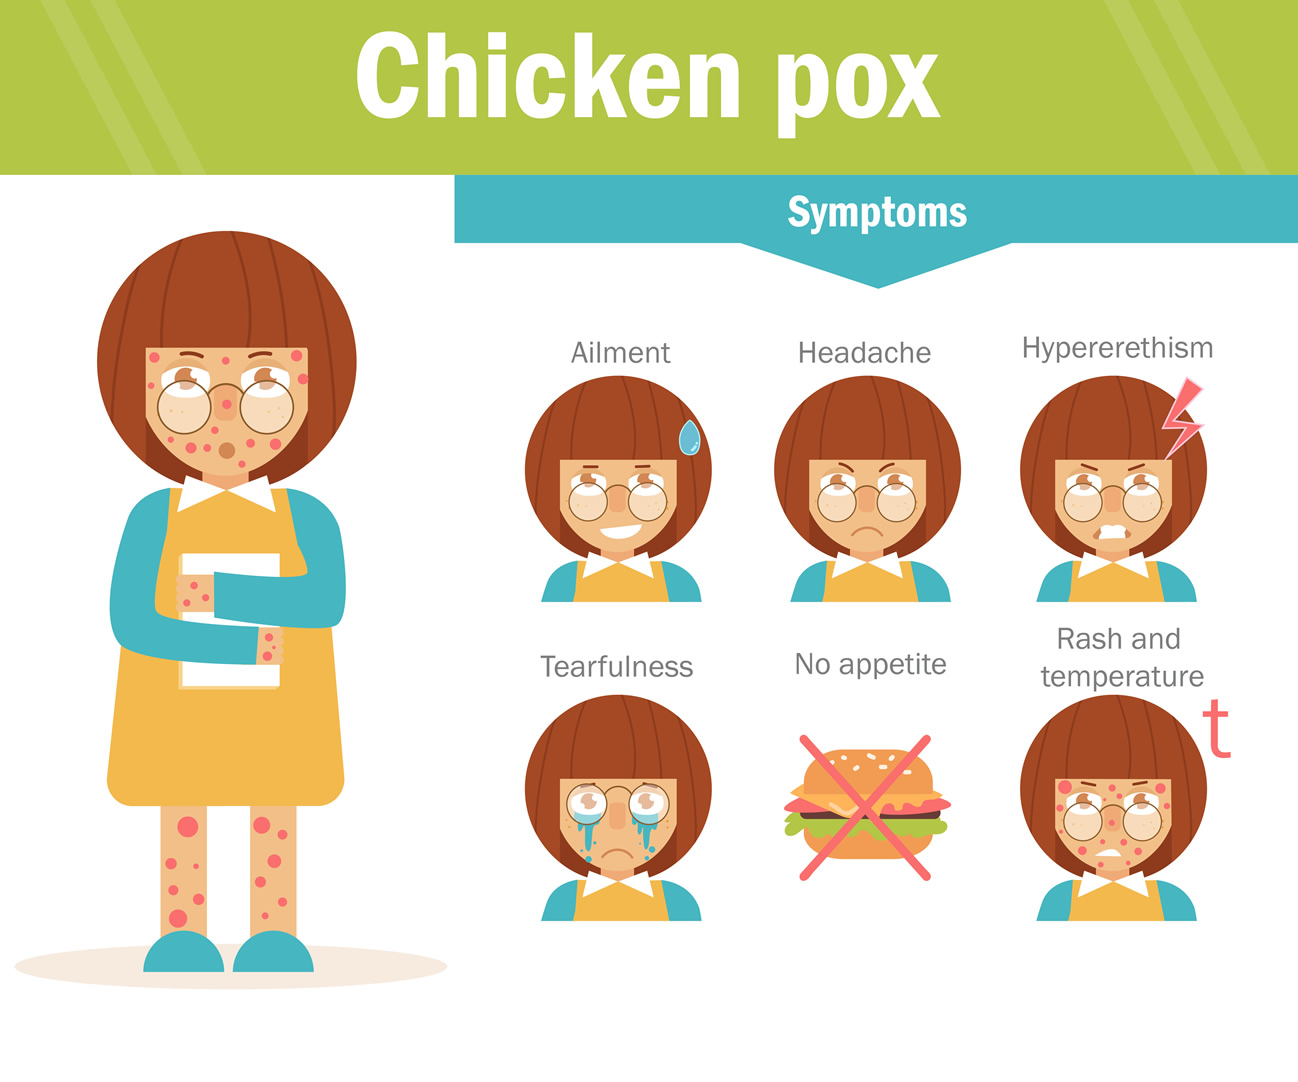 Chicken Pox Vaccination